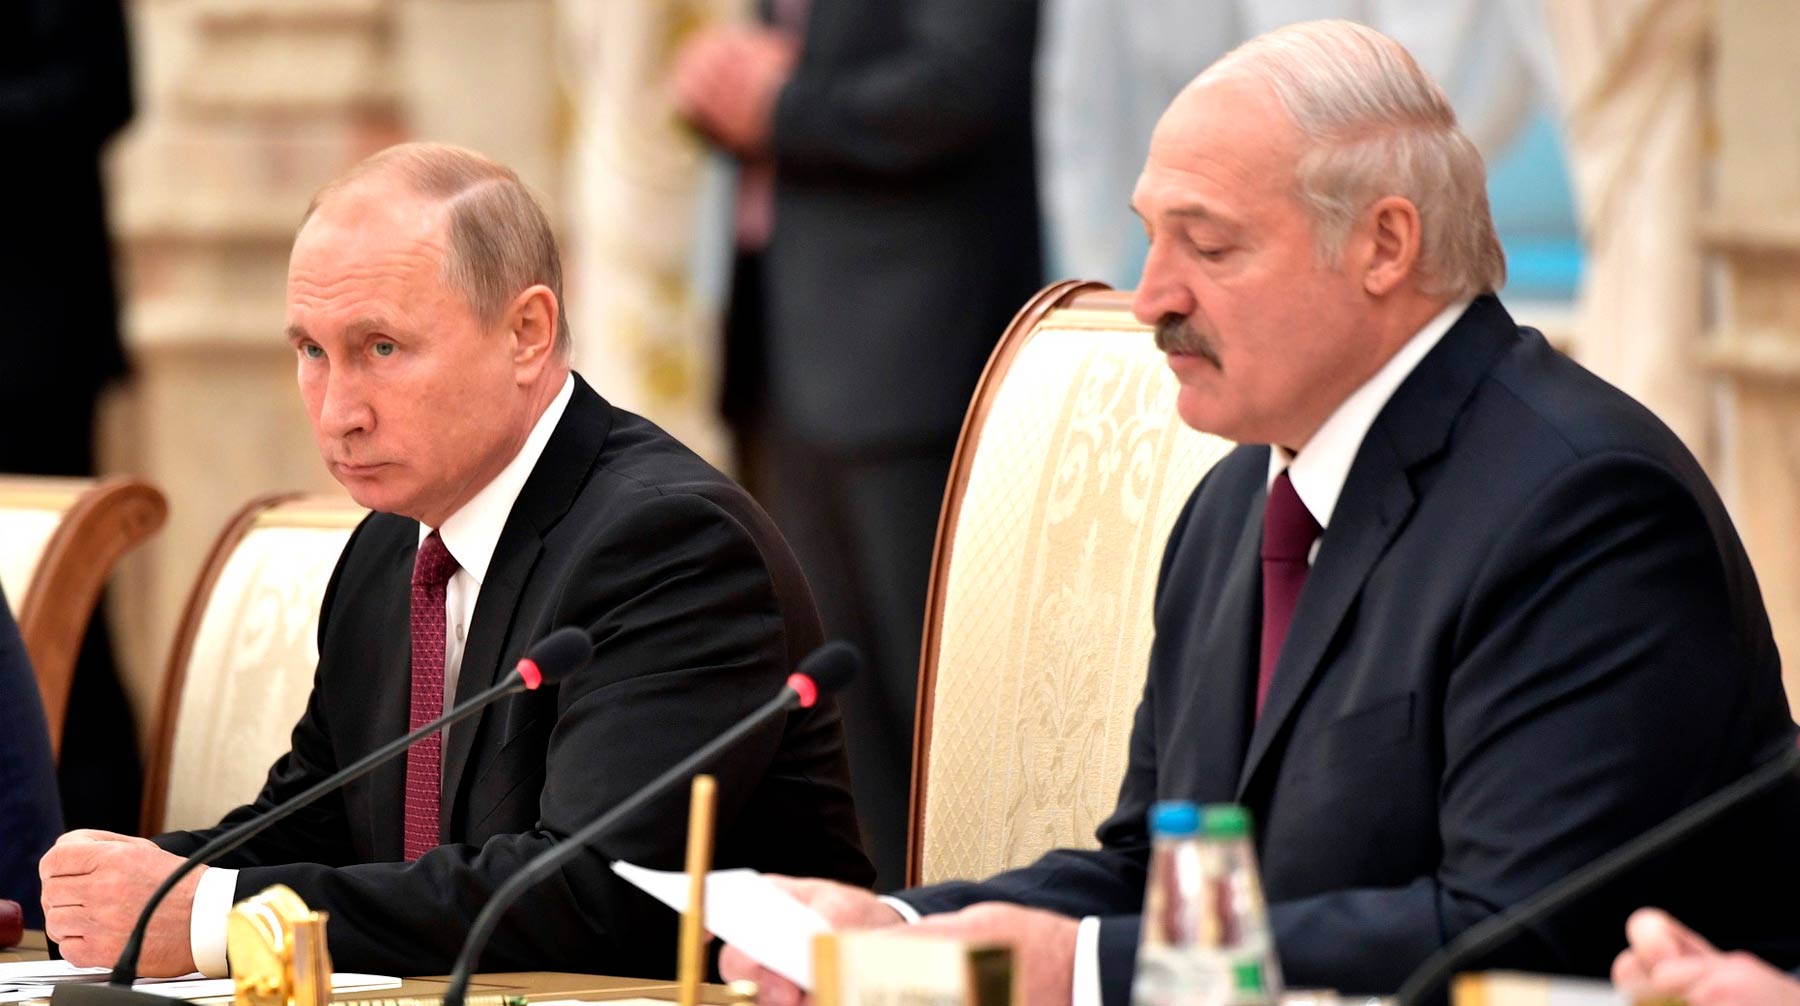 По словам главы государства, это были белорусские БТРы, и направлялись они на западную границу Фото: © Kremlin Pool